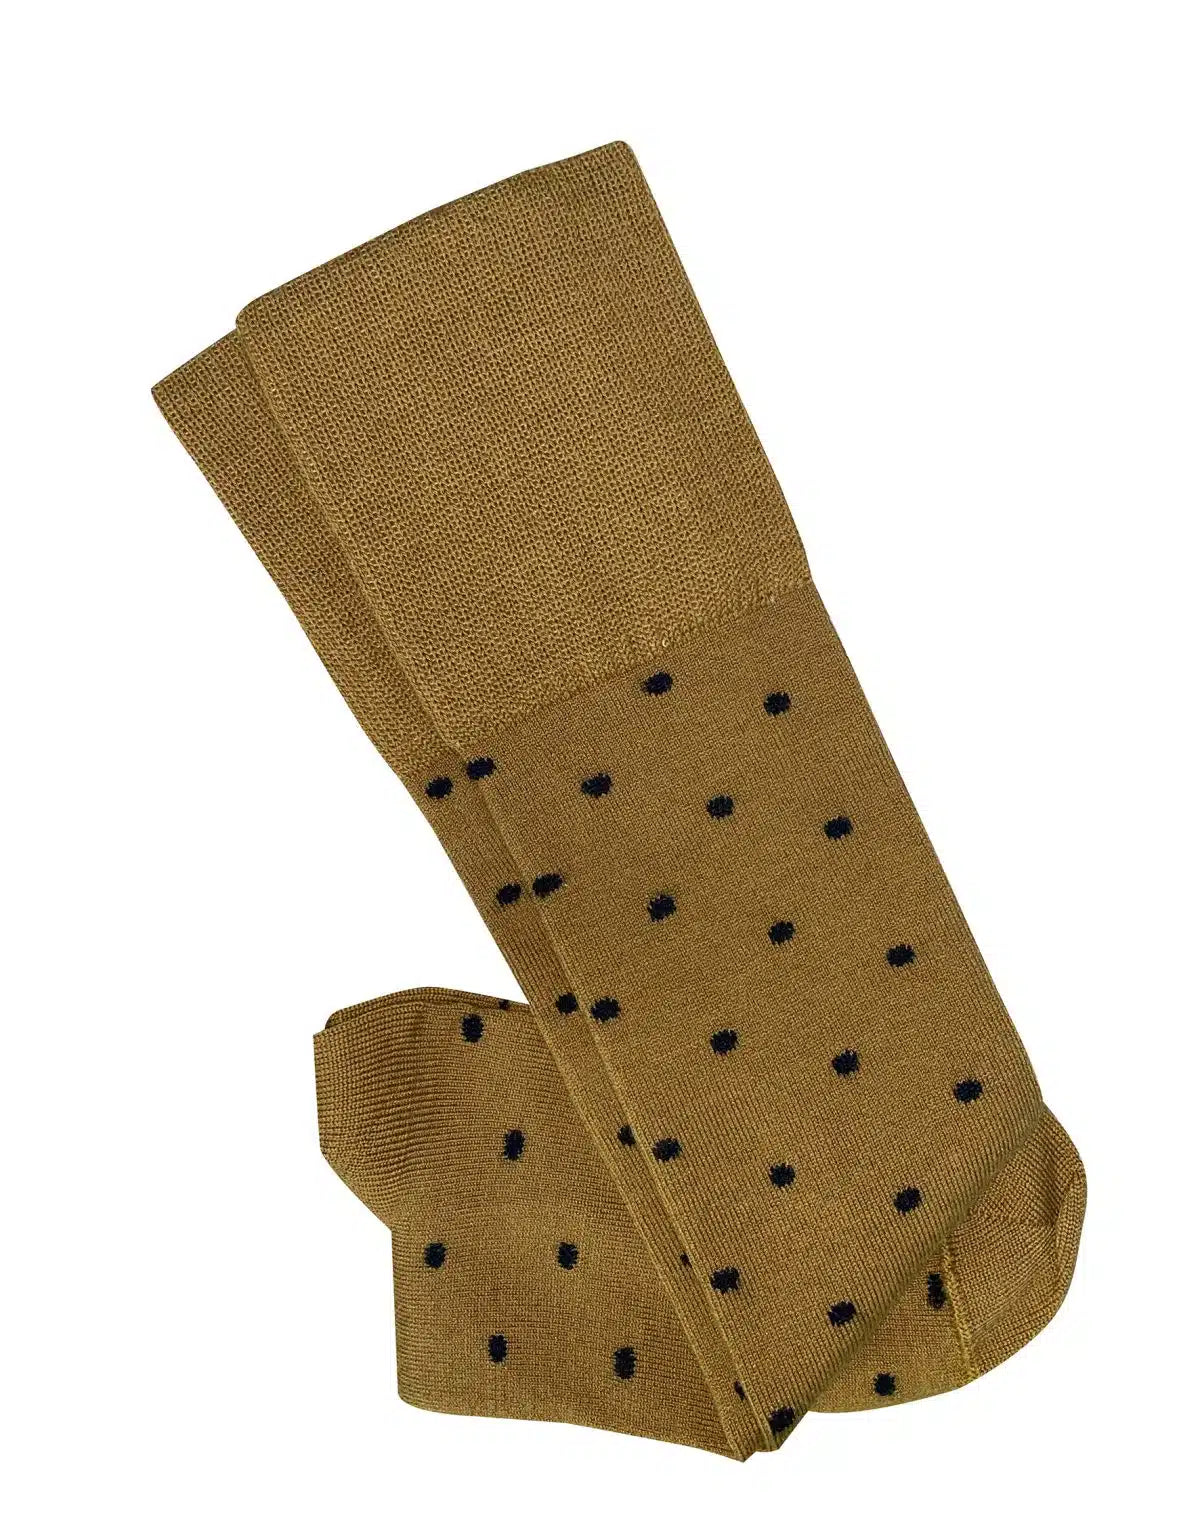 ‘Dotty’ Merino Socks - Tightology socks Tightology Mustard/Black 